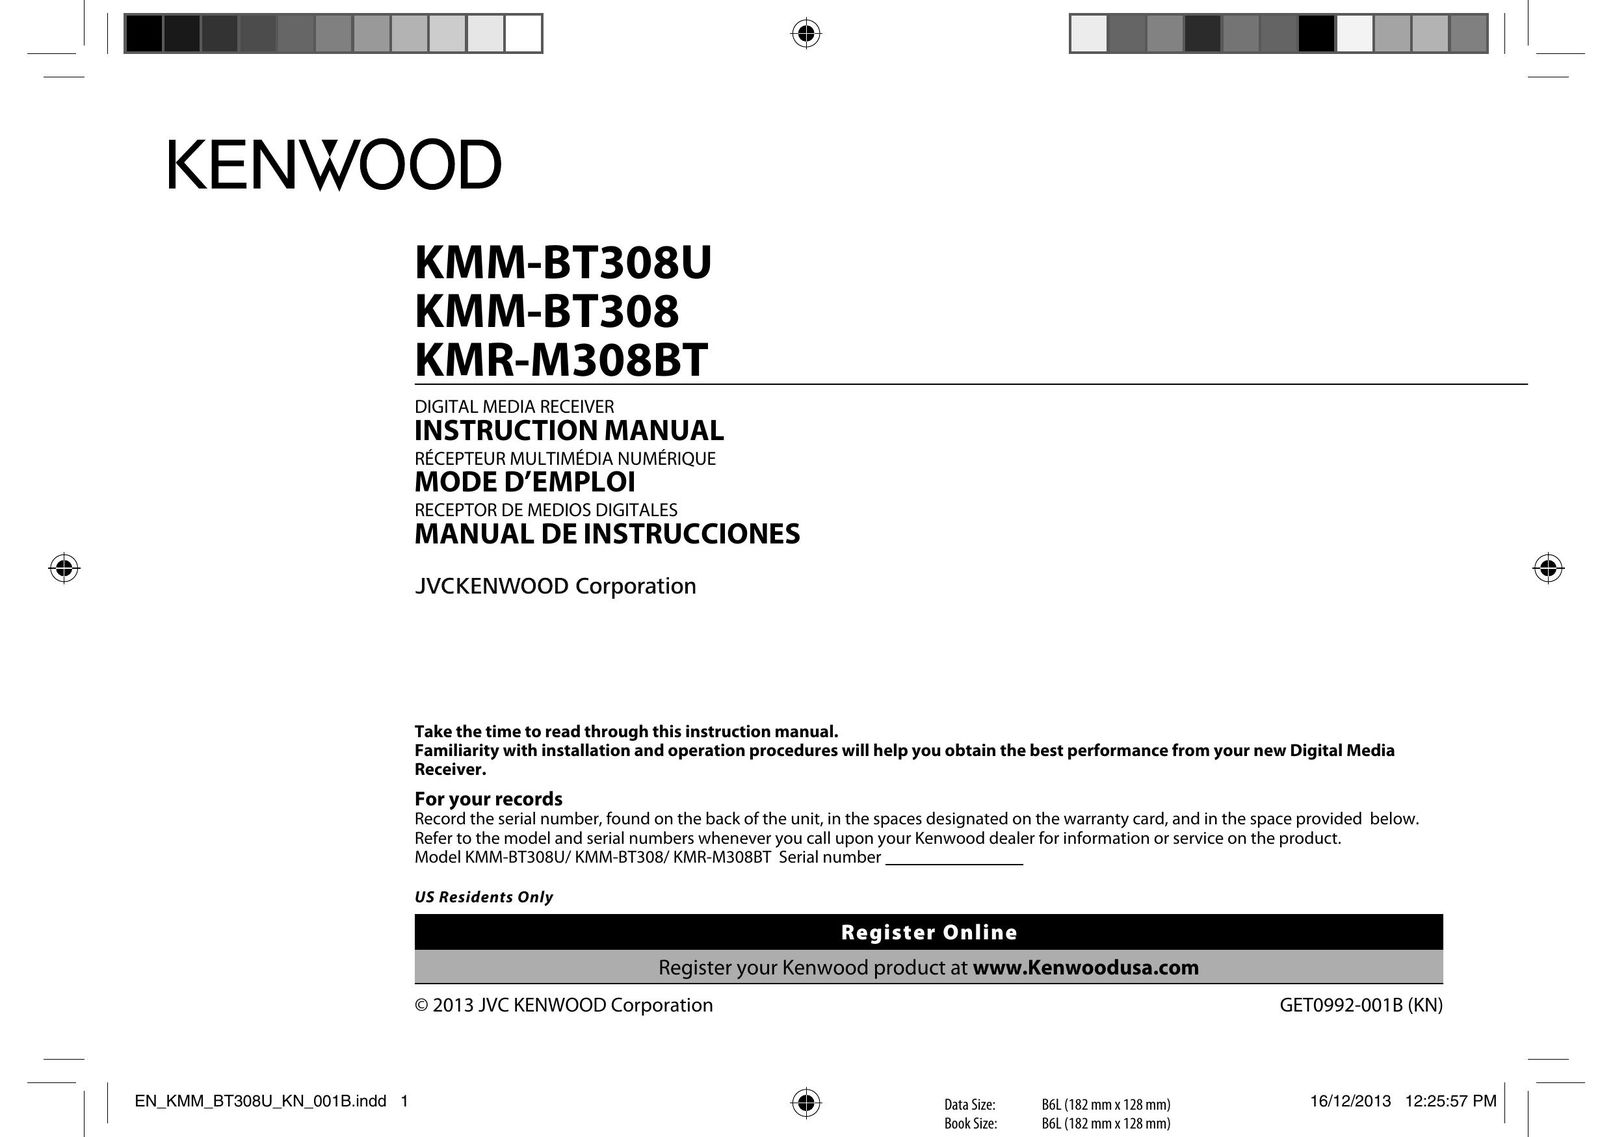 Kenwood KMM-BT308 Car Satellite Radio System User Manual